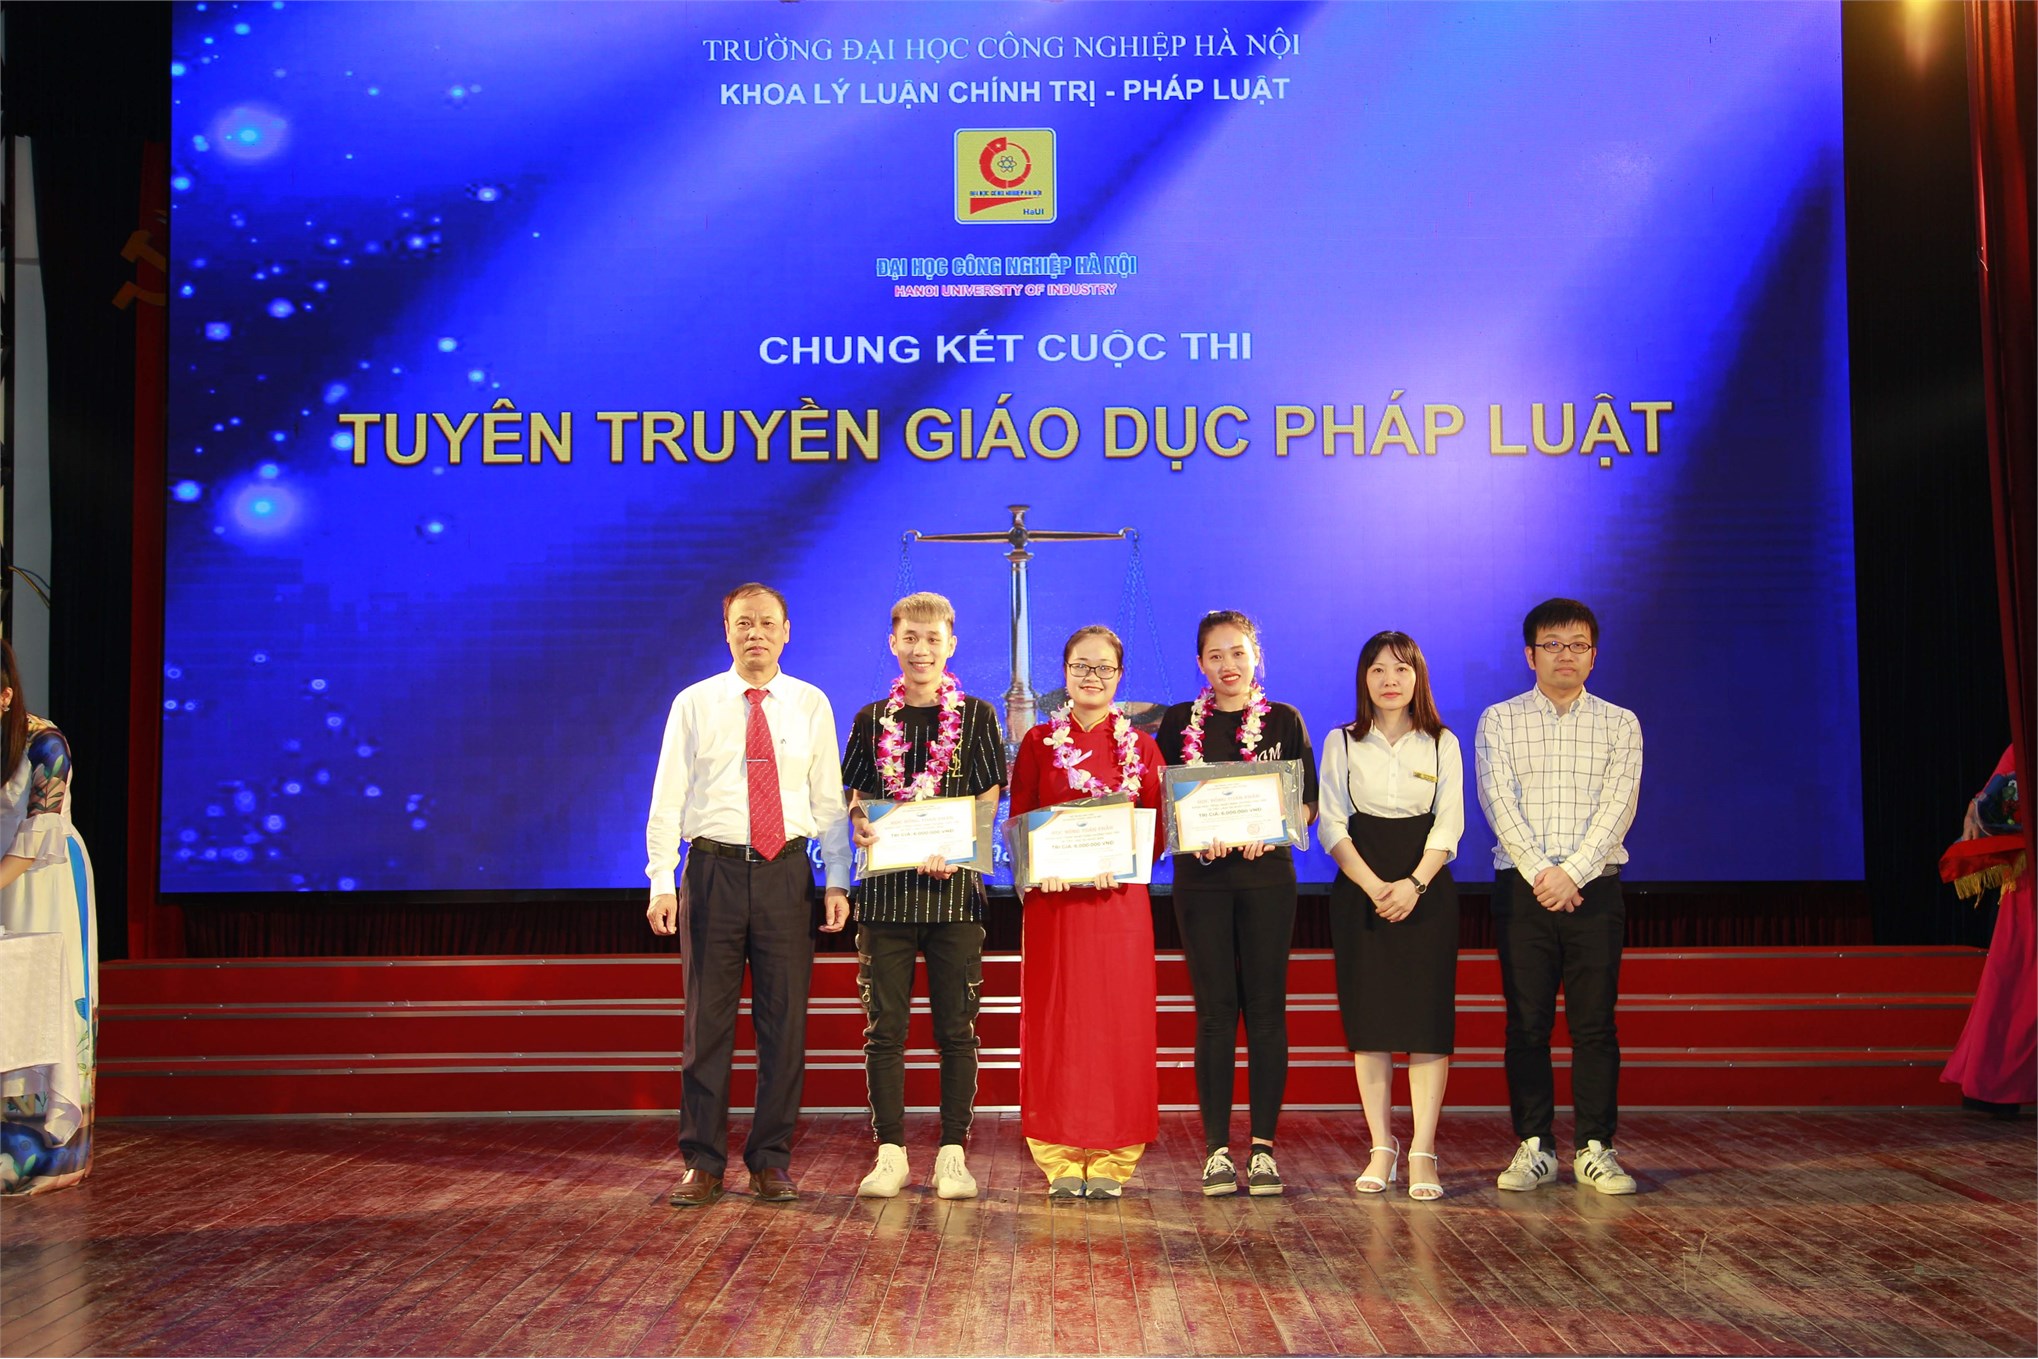 Chung kết Cuộc thi `Tuyên truyền giáo dục pháp luật năm 2019` Trường Đại học Công nghiệp Hà Nội